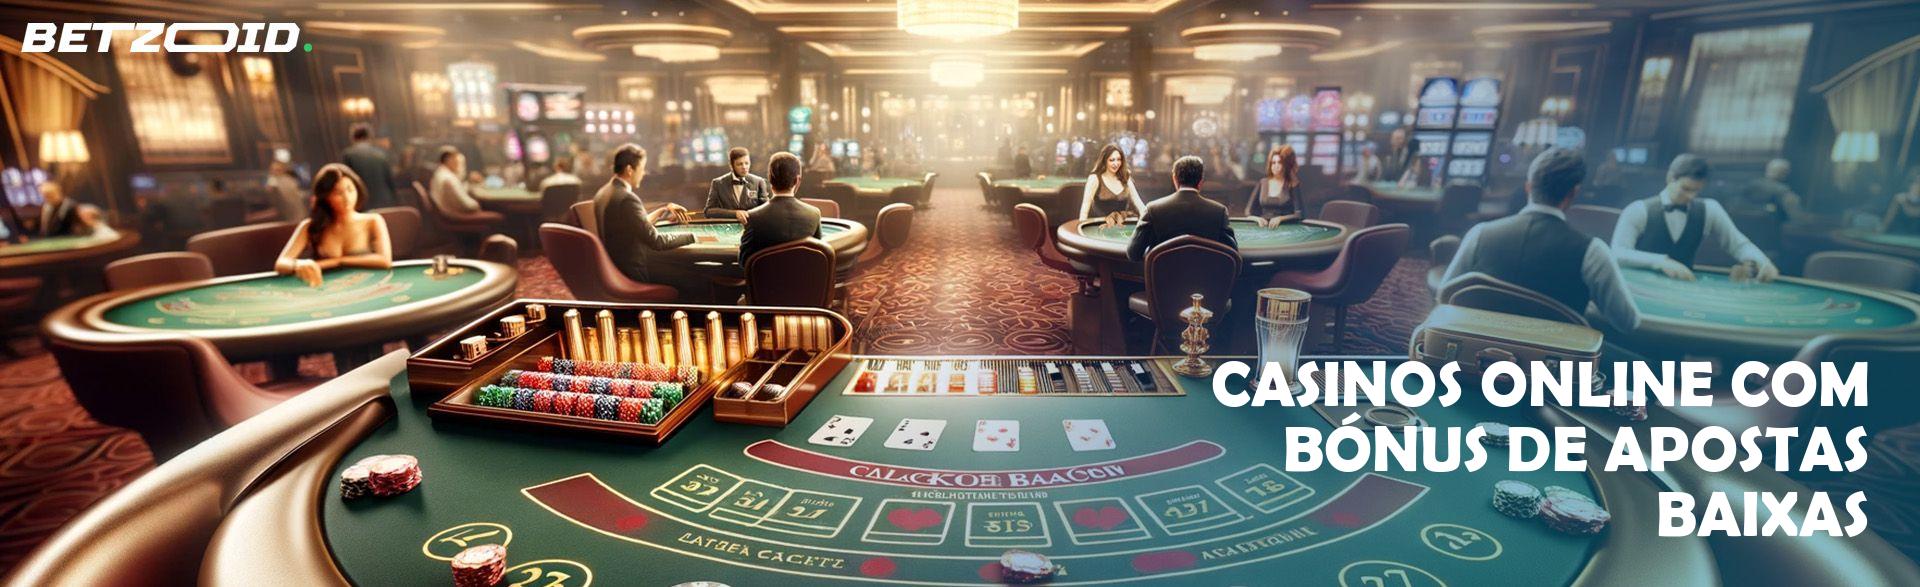 Casinos Online com Bónus de Apostas Baixas.